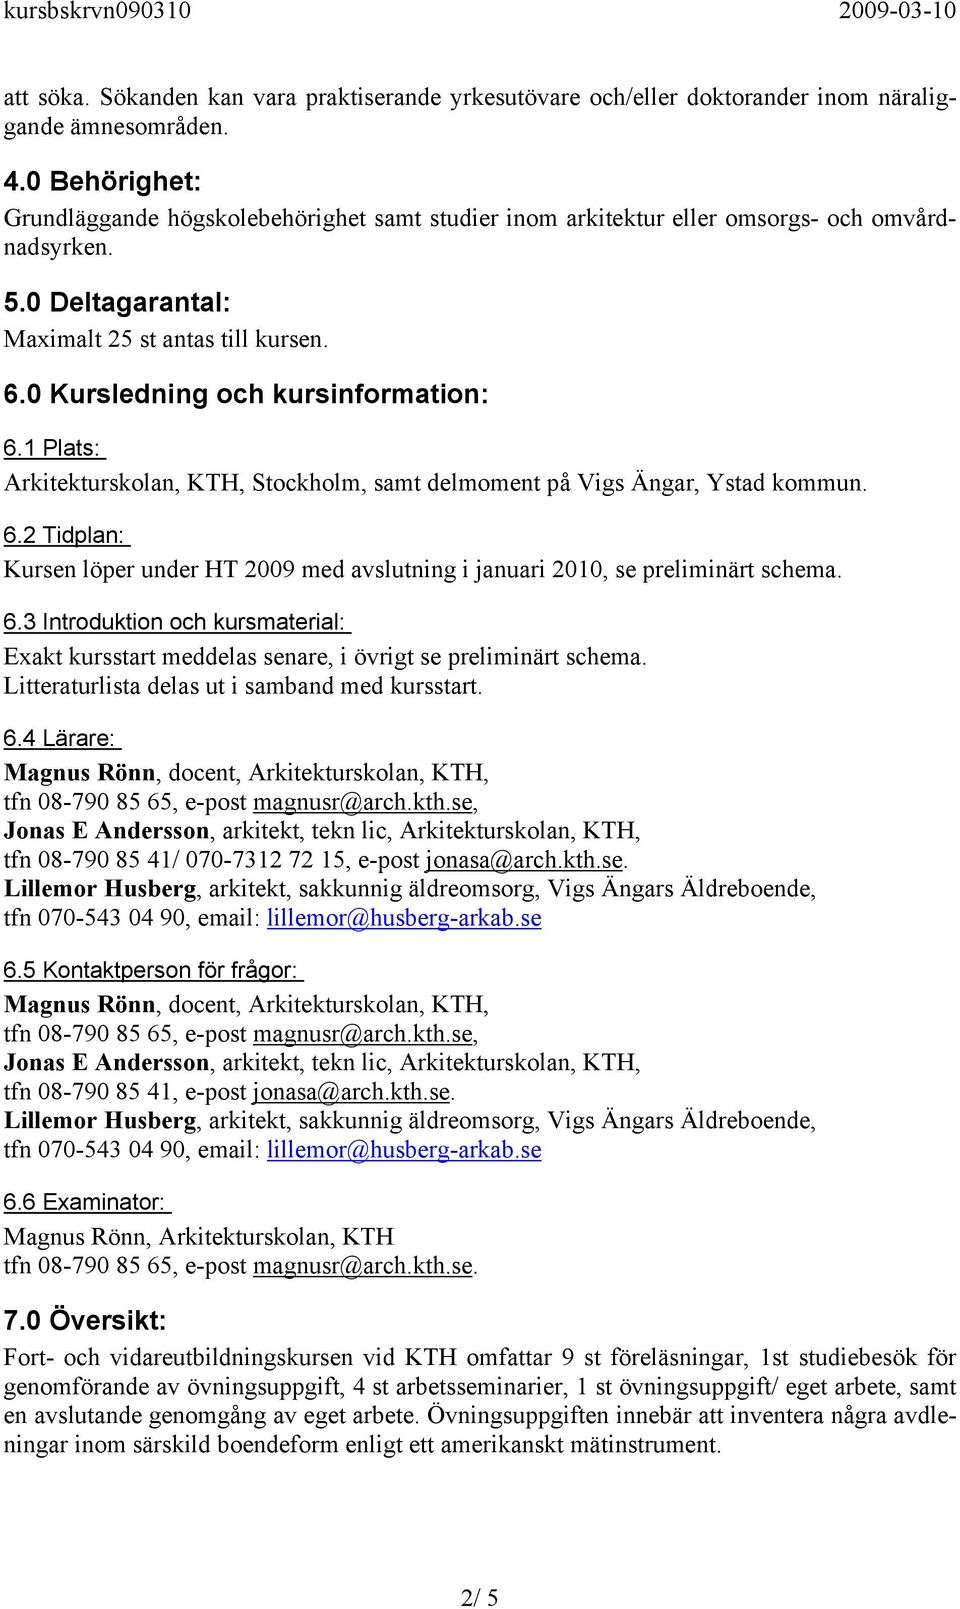 0 Kursledning och kursinformation: 6.1 Plats: Arkitekturskolan, KTH, Stockholm, samt delmoment på Vigs Ängar, Ystad kommun. 6.2 Tidplan: Kursen löper under HT 2009 med avslutning i januari 2010, se preliminärt schema.